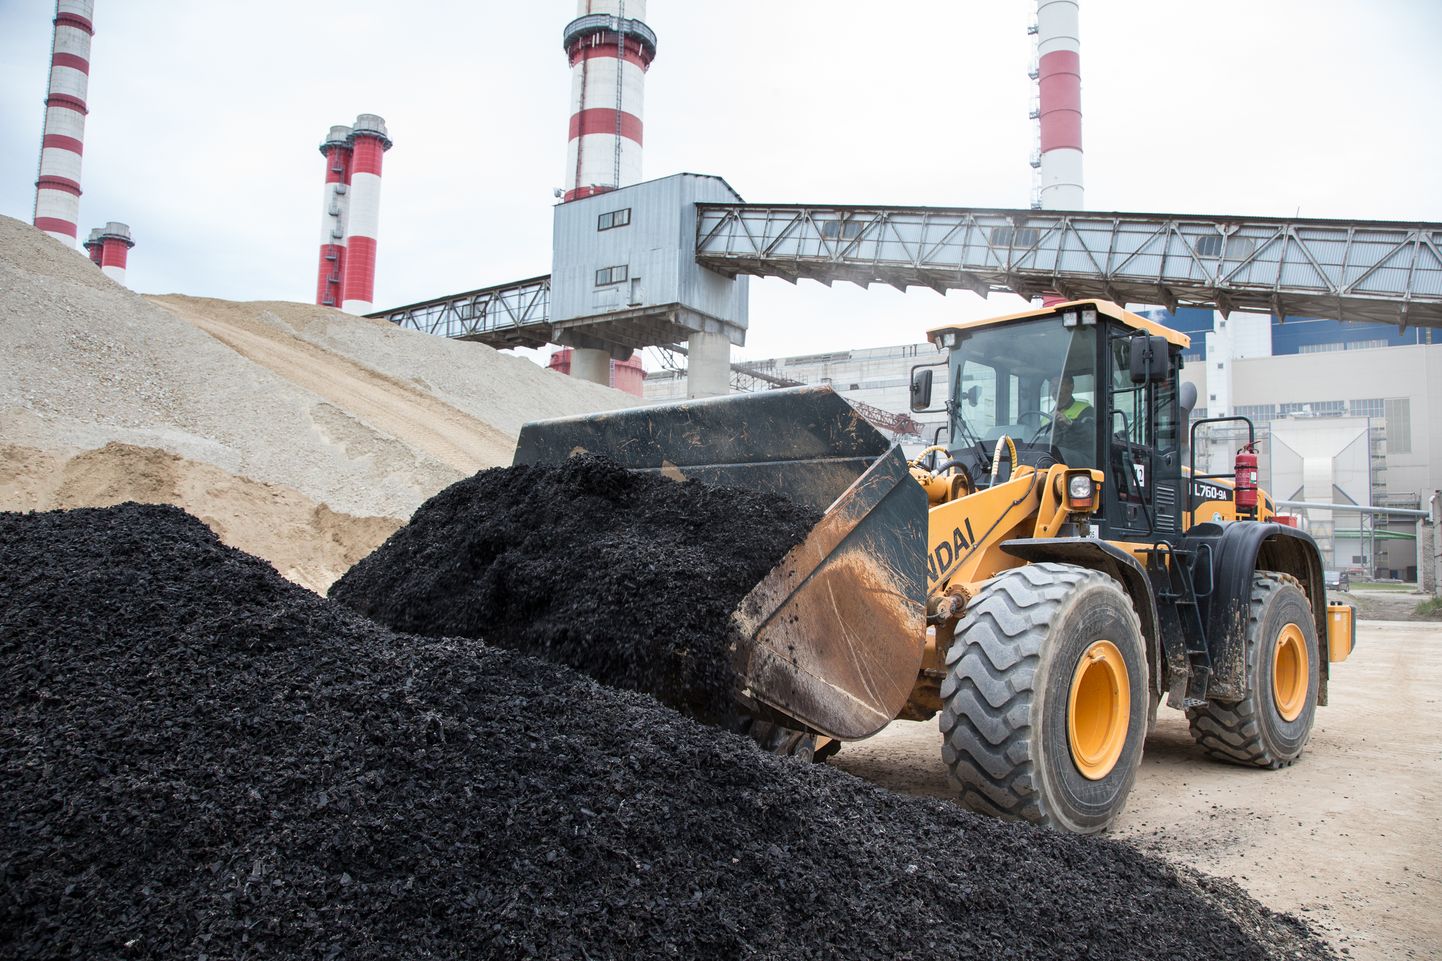 Если сейчас сырьем для заводов масел "Eesti Energia" является сланец, то в ближайшем будущем наряду со сланцем они станут использовать измельченные старые шины и пластиковые отходы.